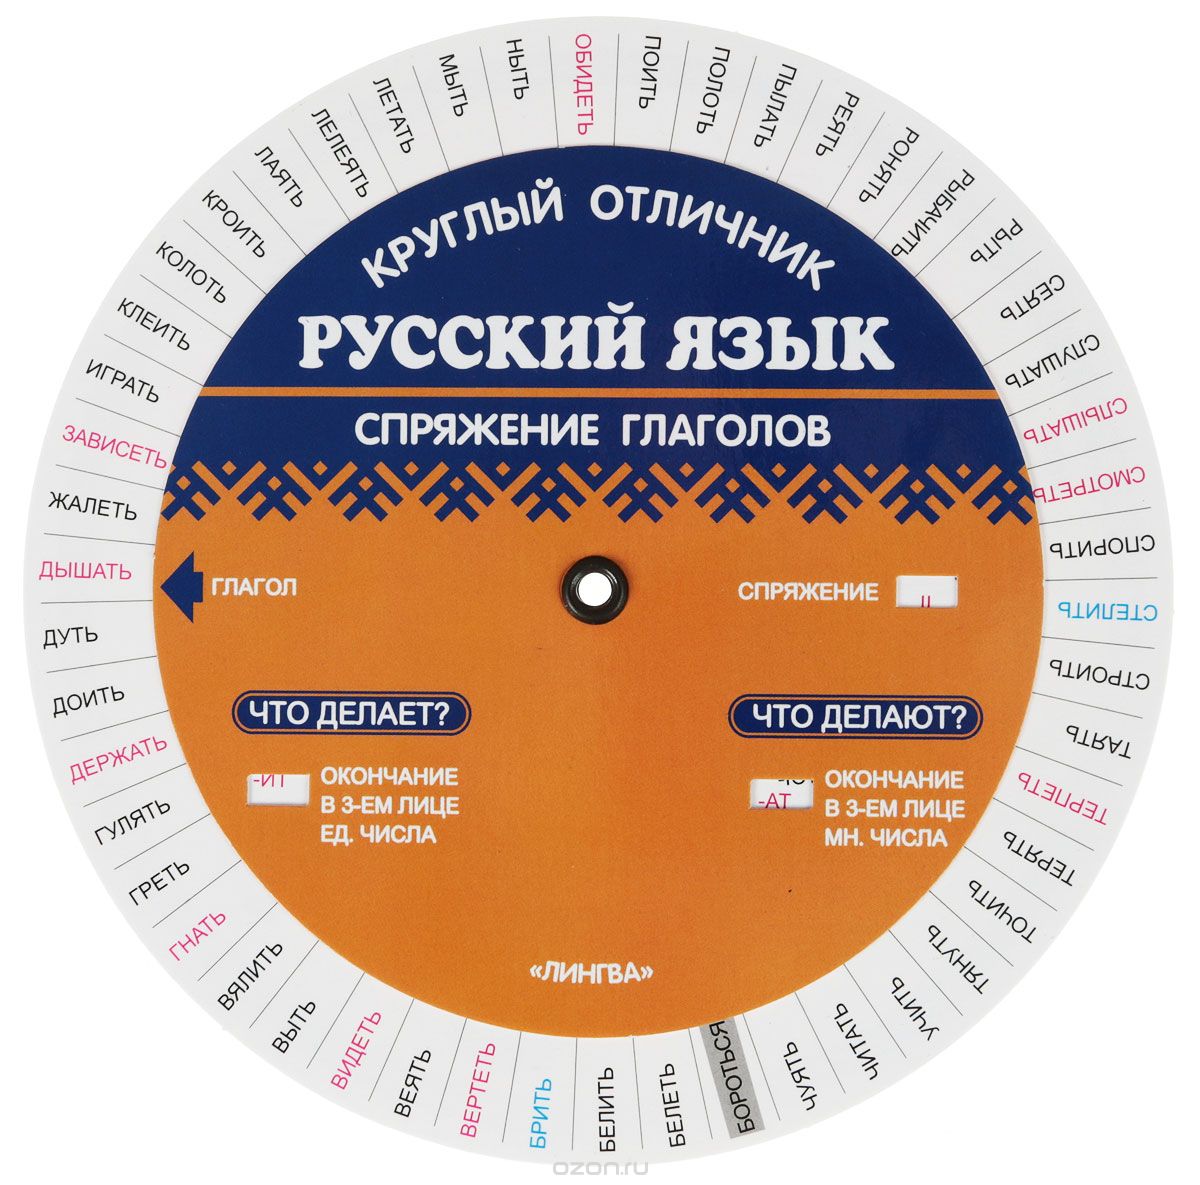 Русский язык. Спряжение глаголов. Таблица-вертушка